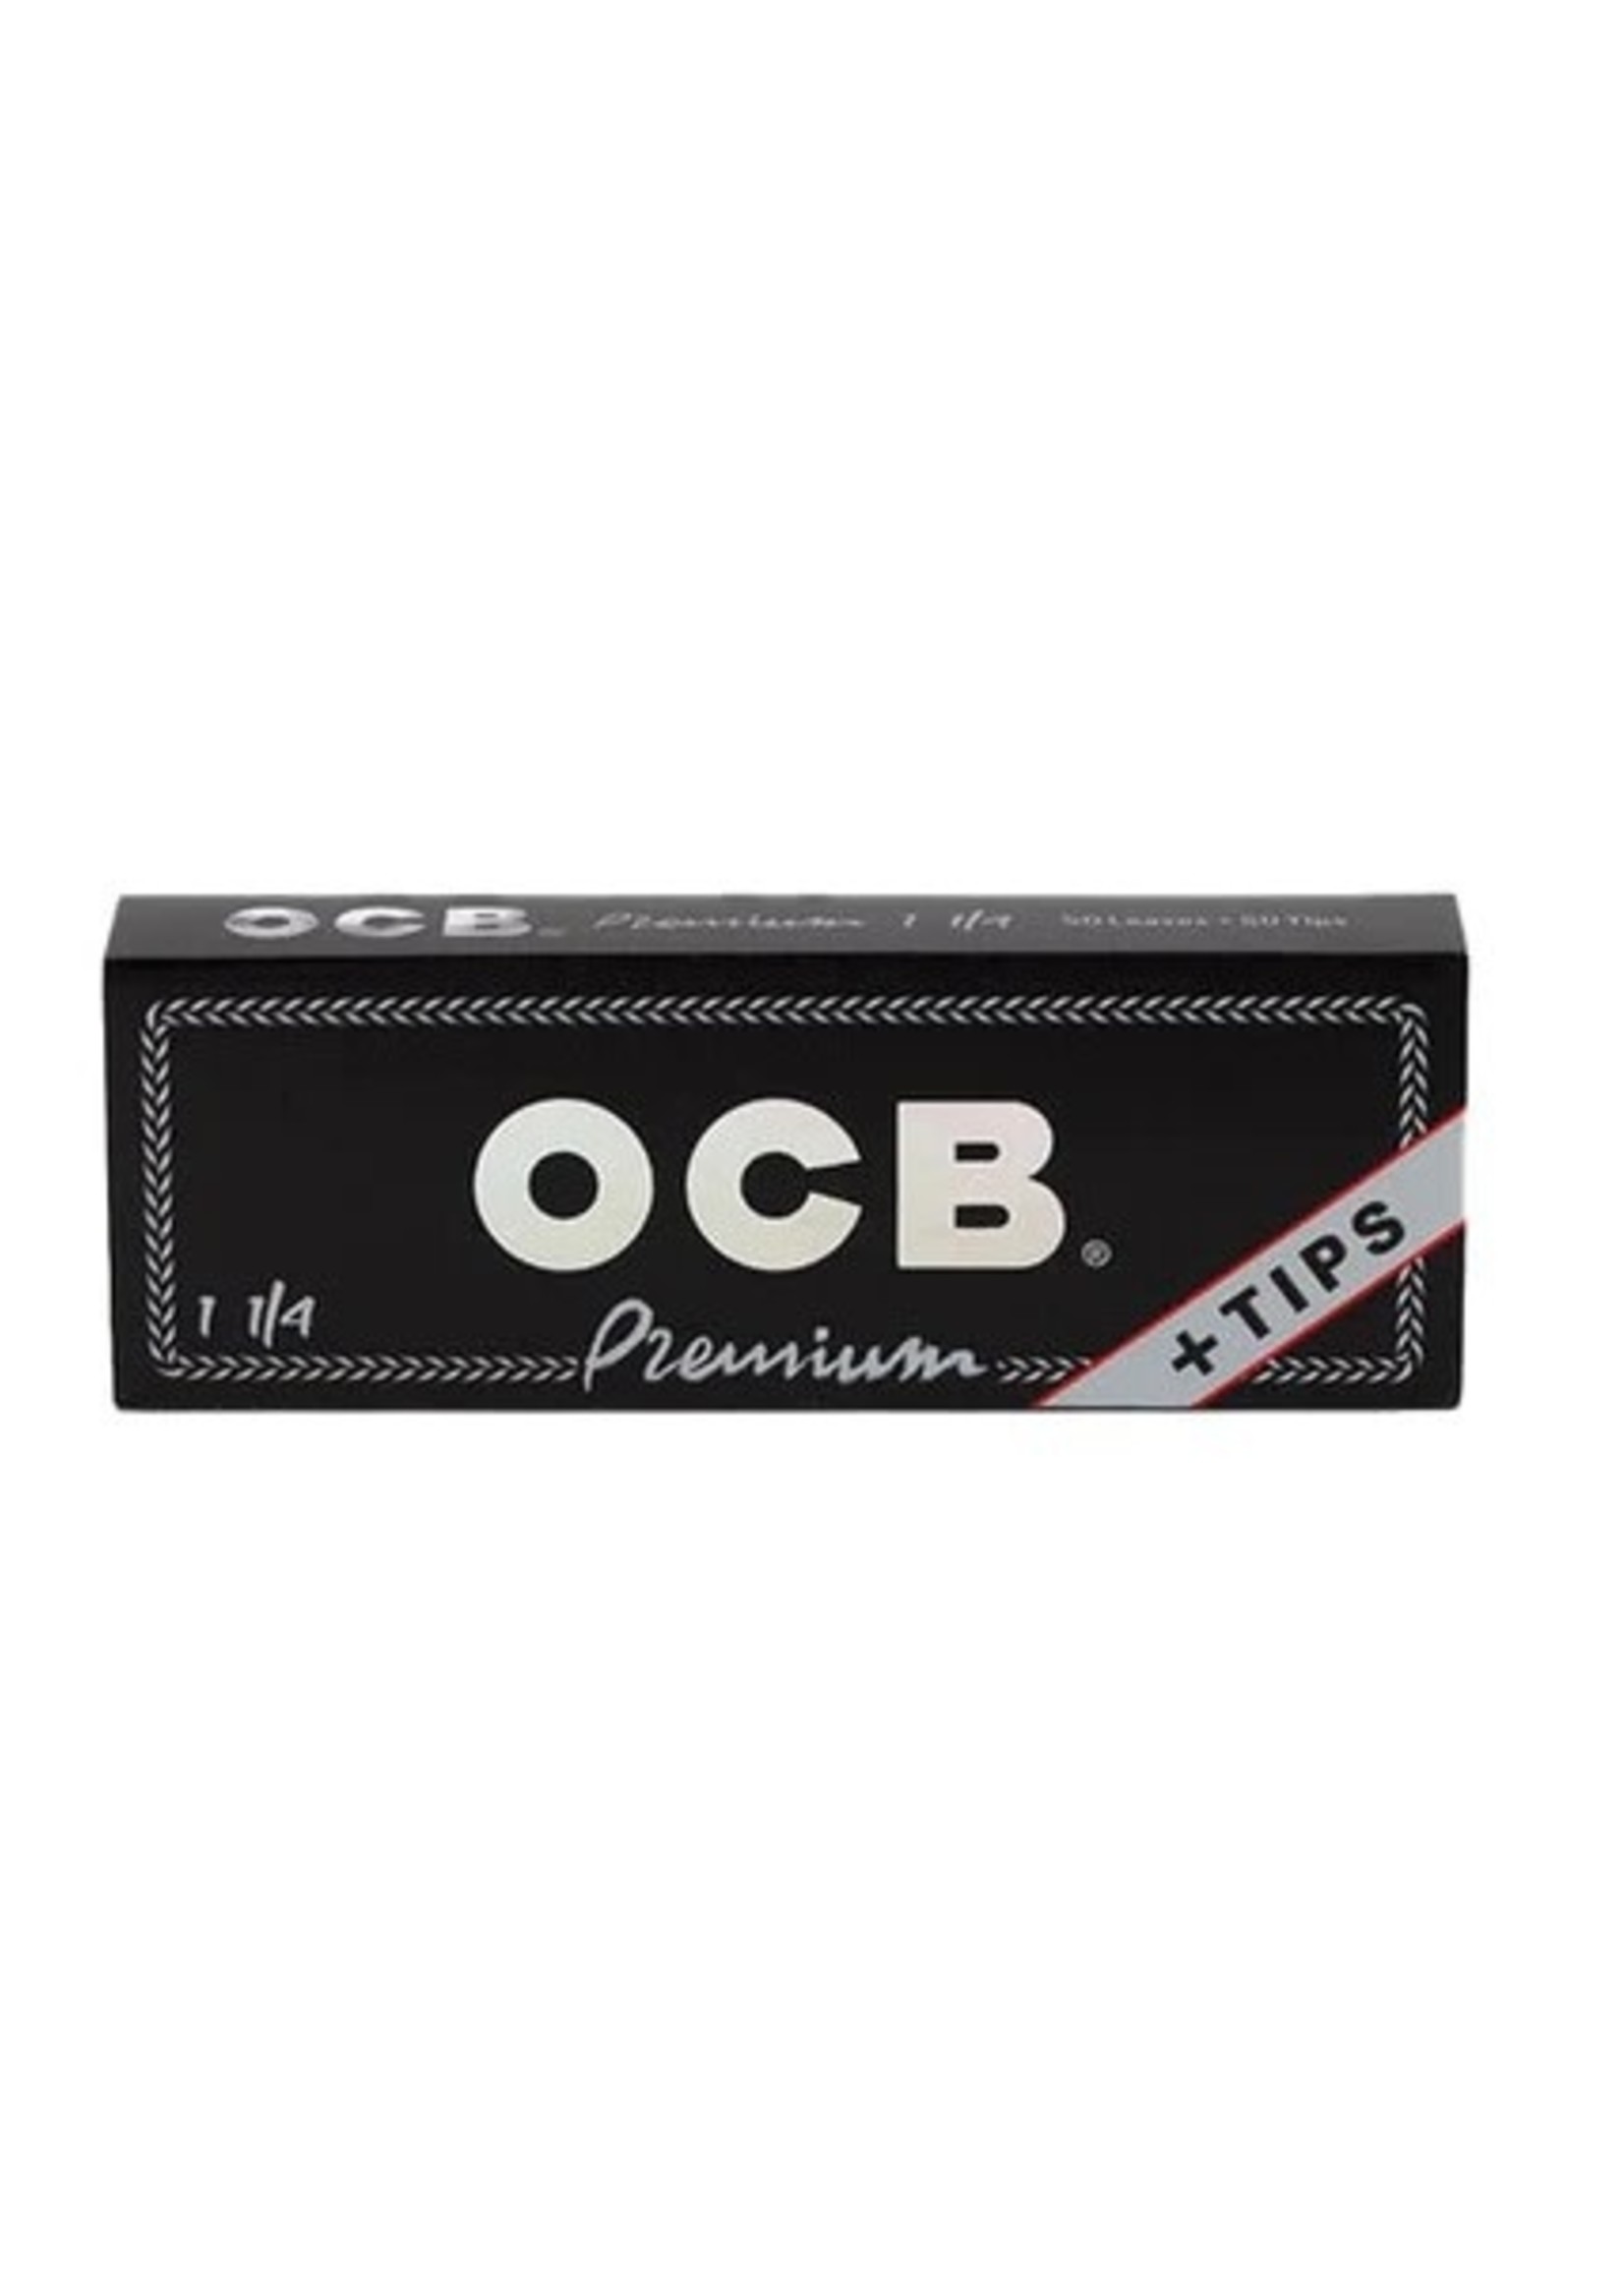 OCB OCB PREMIUM + TIPS